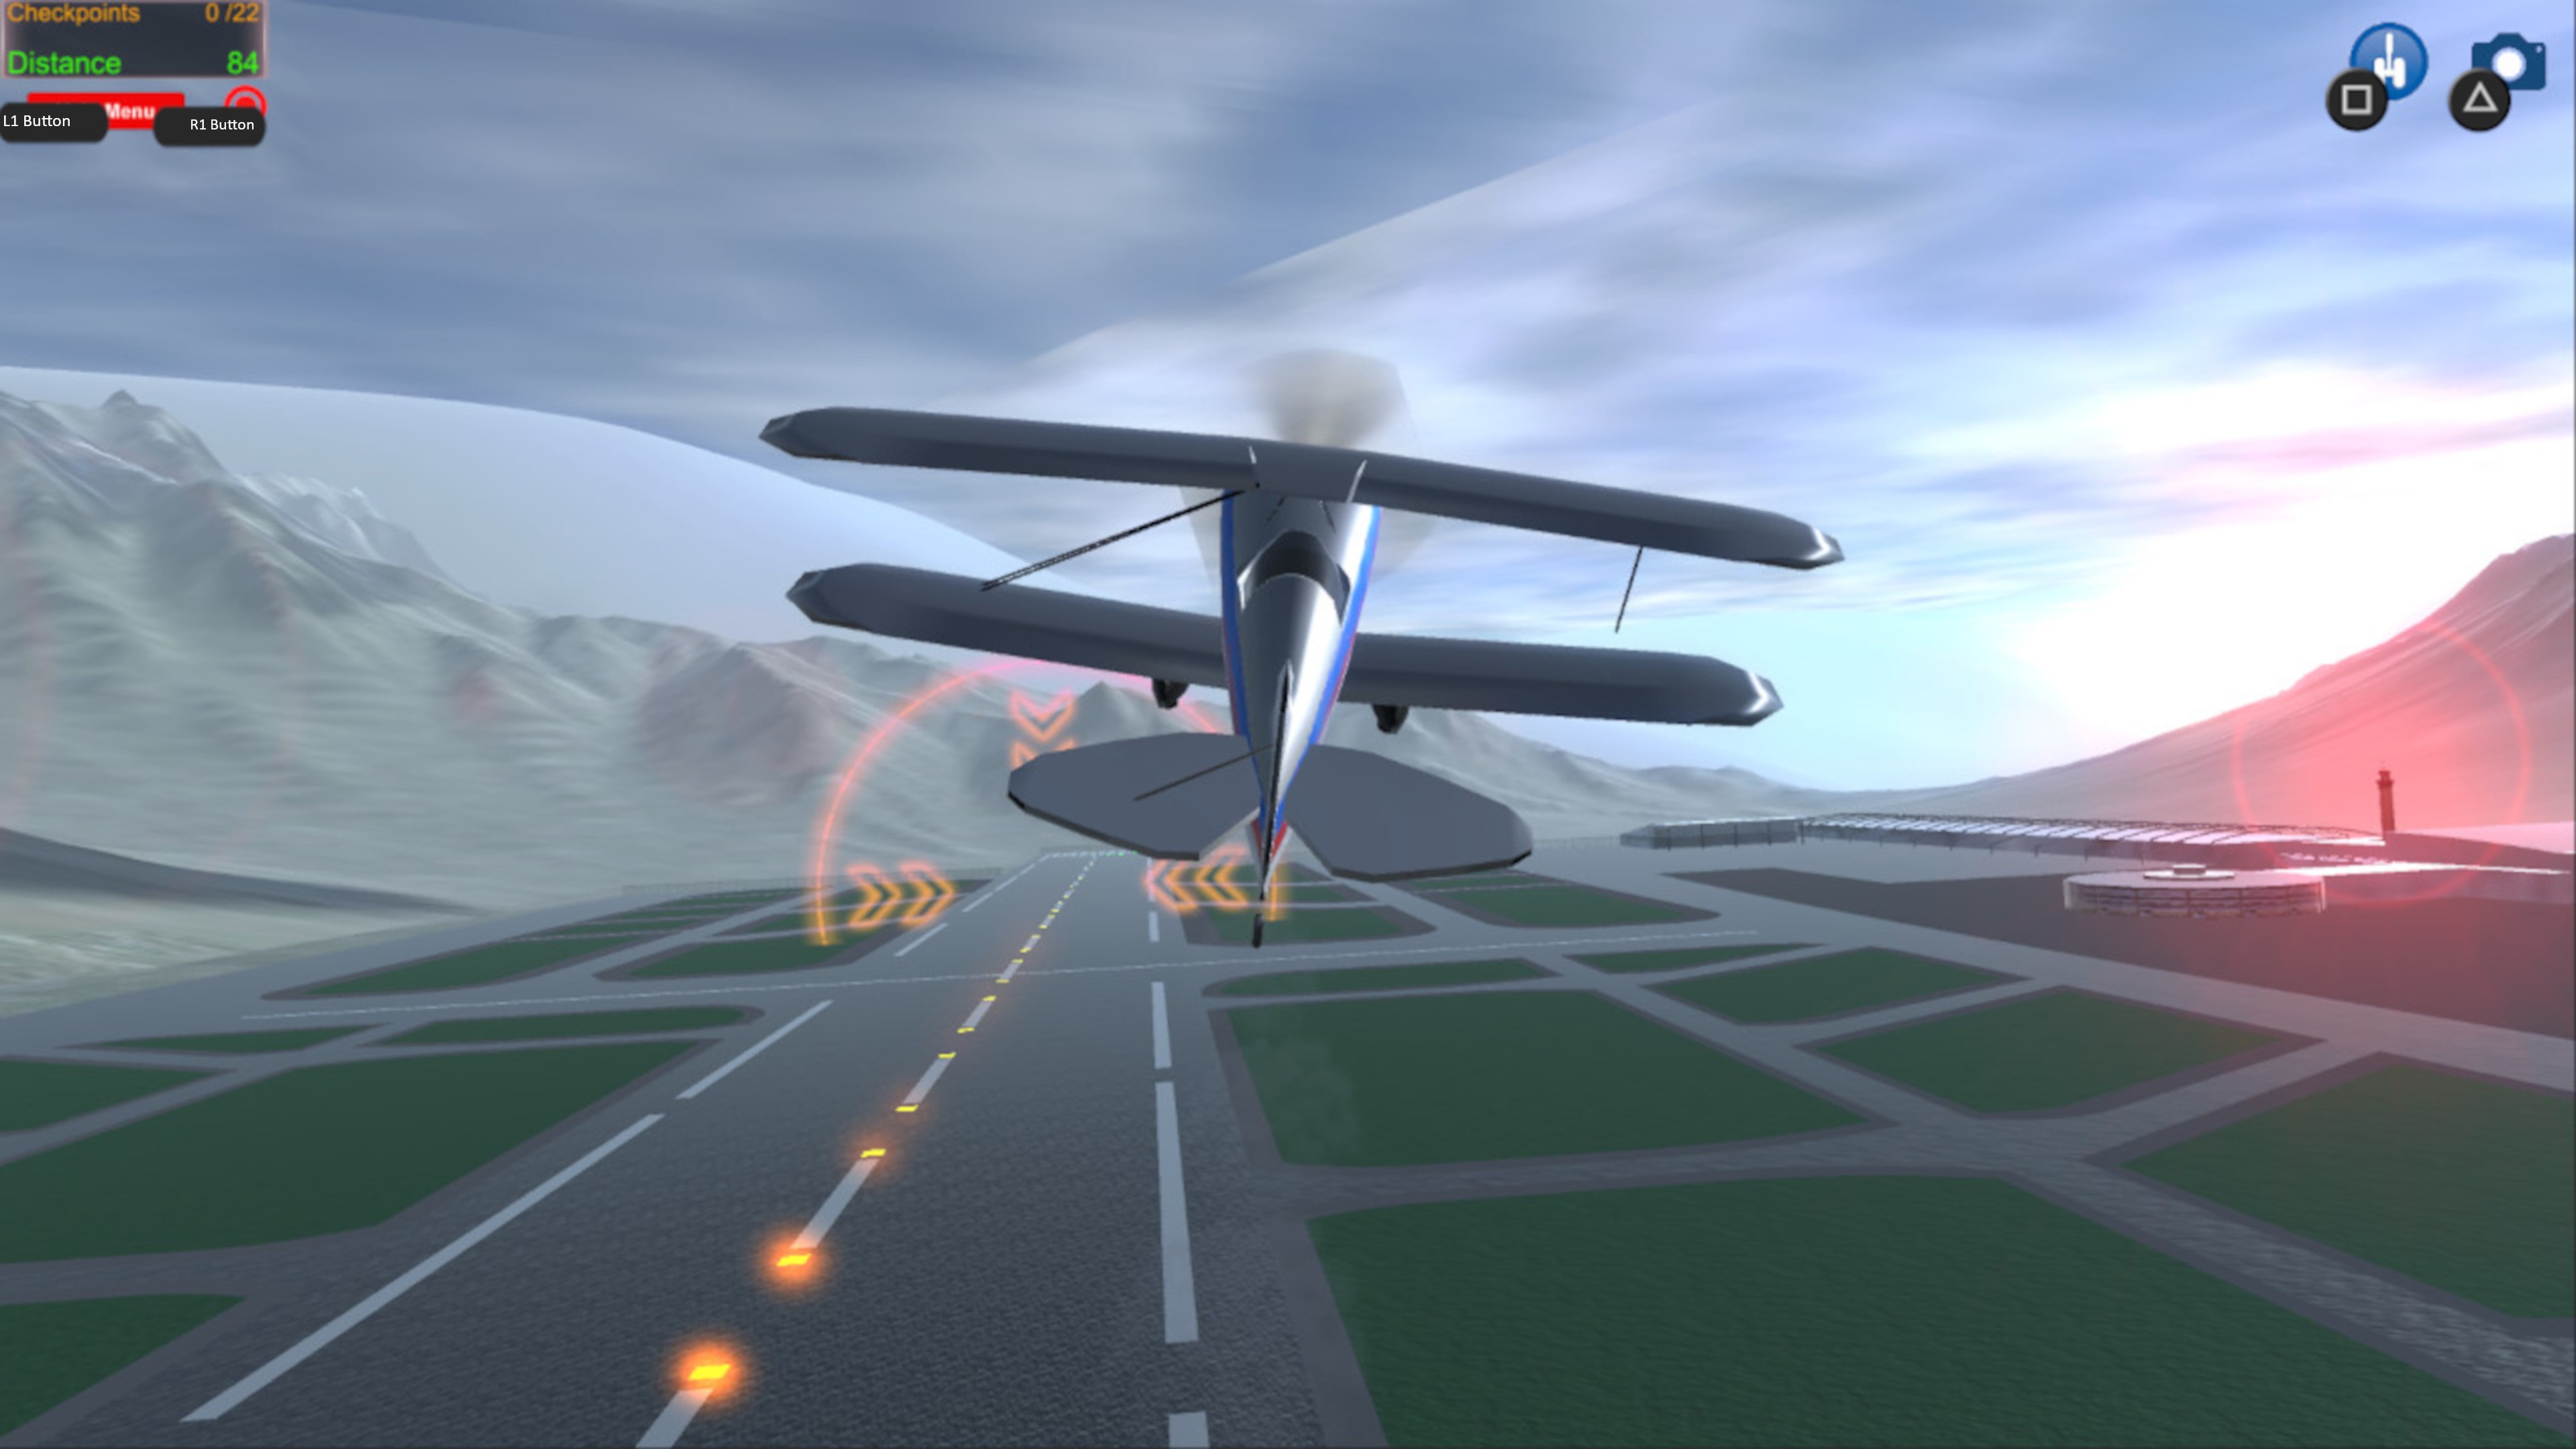  Flight Simulator Ps4